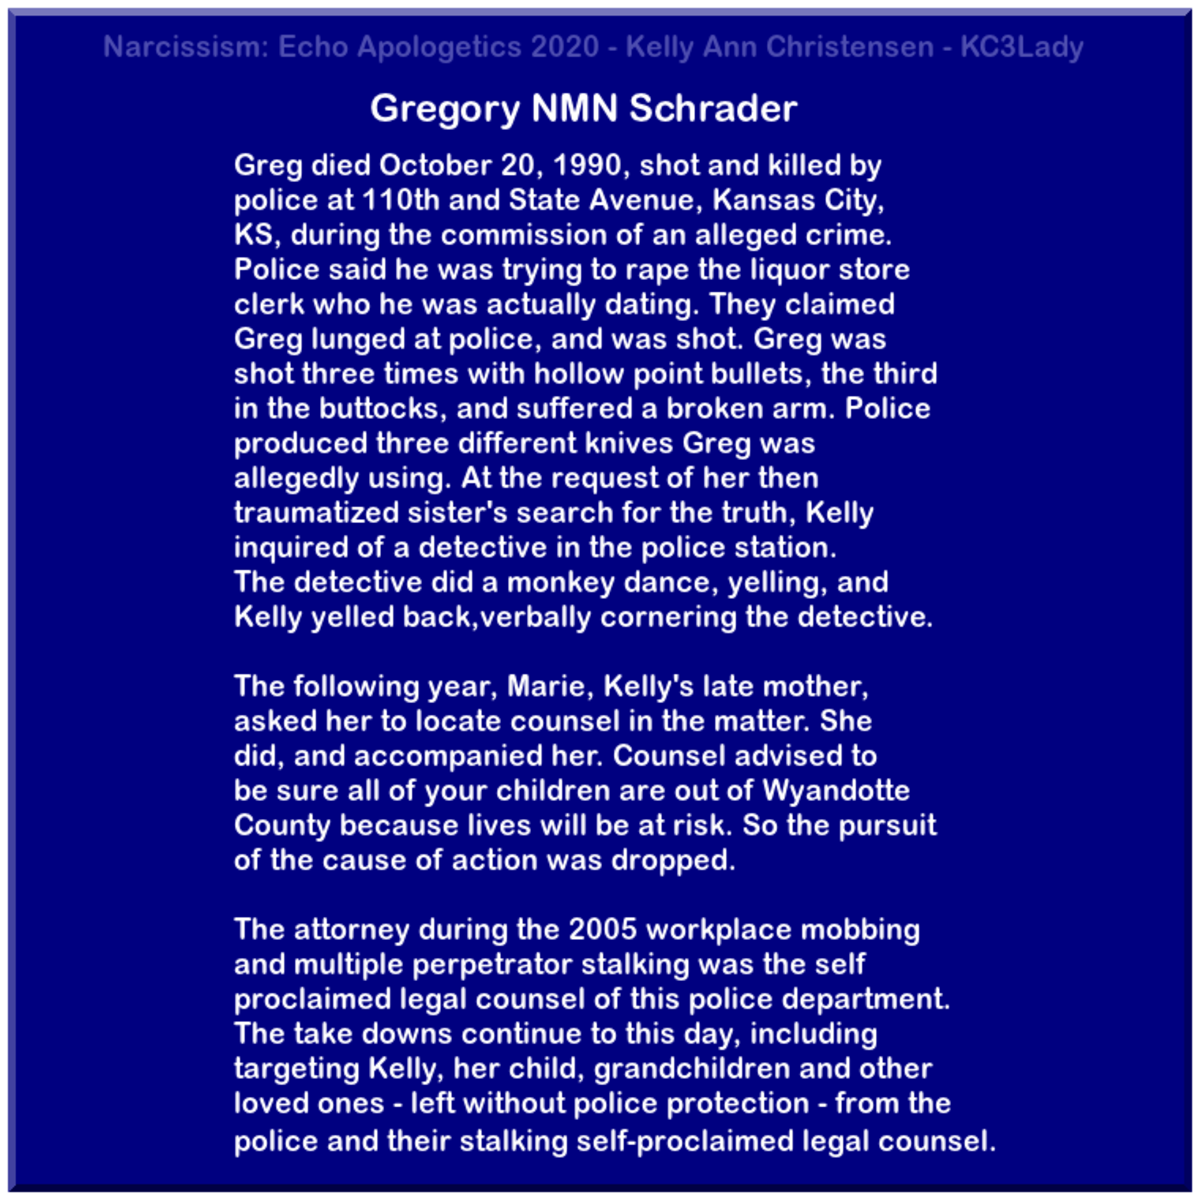 Gregory NMN Schrader's Death